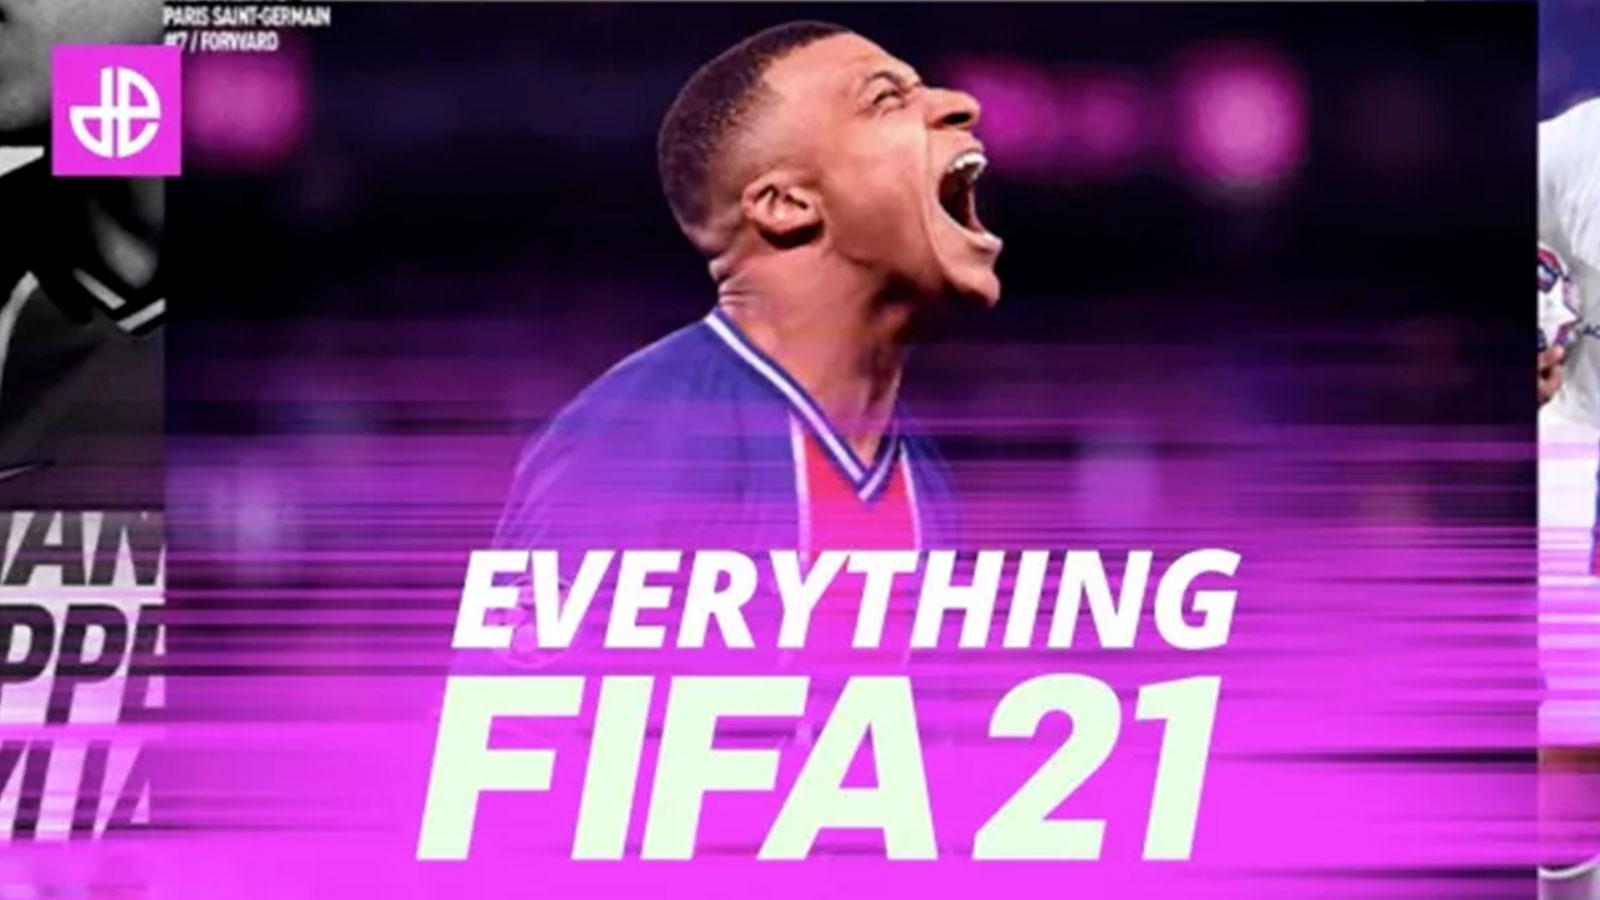 Le Meilleur du PSG on X: La maquette de FIFA 21 avec le PSG